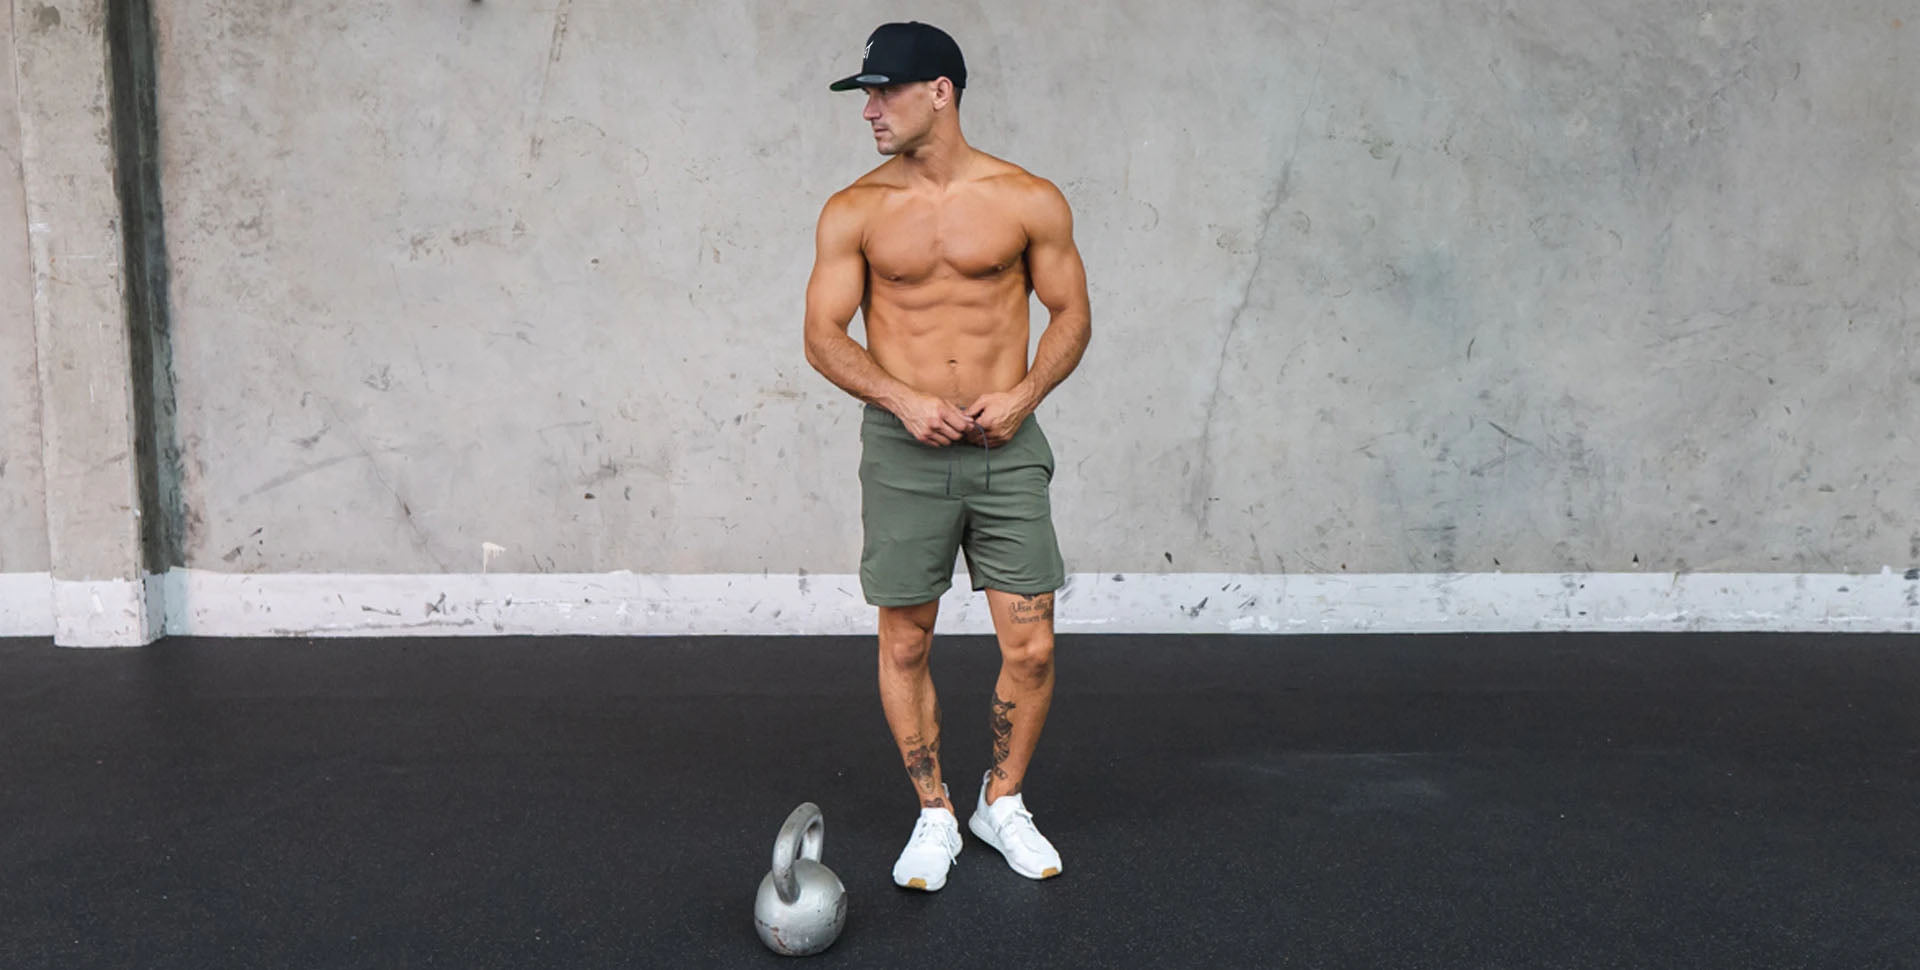 Gym Fashion For Men 2021 ⋆ Best Fashion Blog For Men 